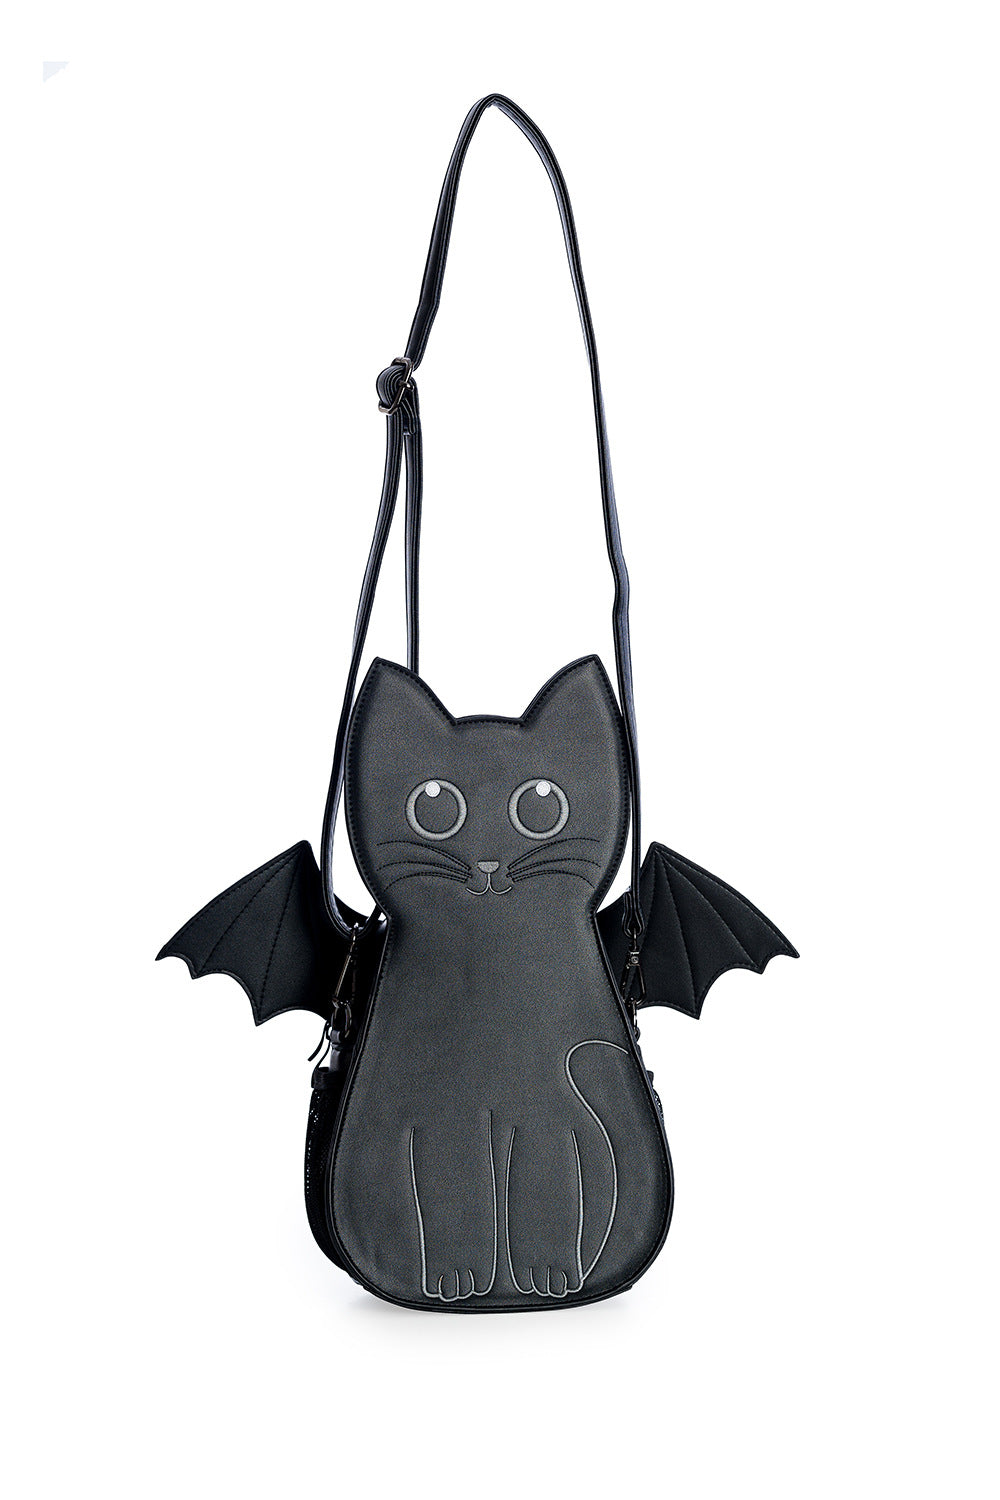 Cat Bat Bag